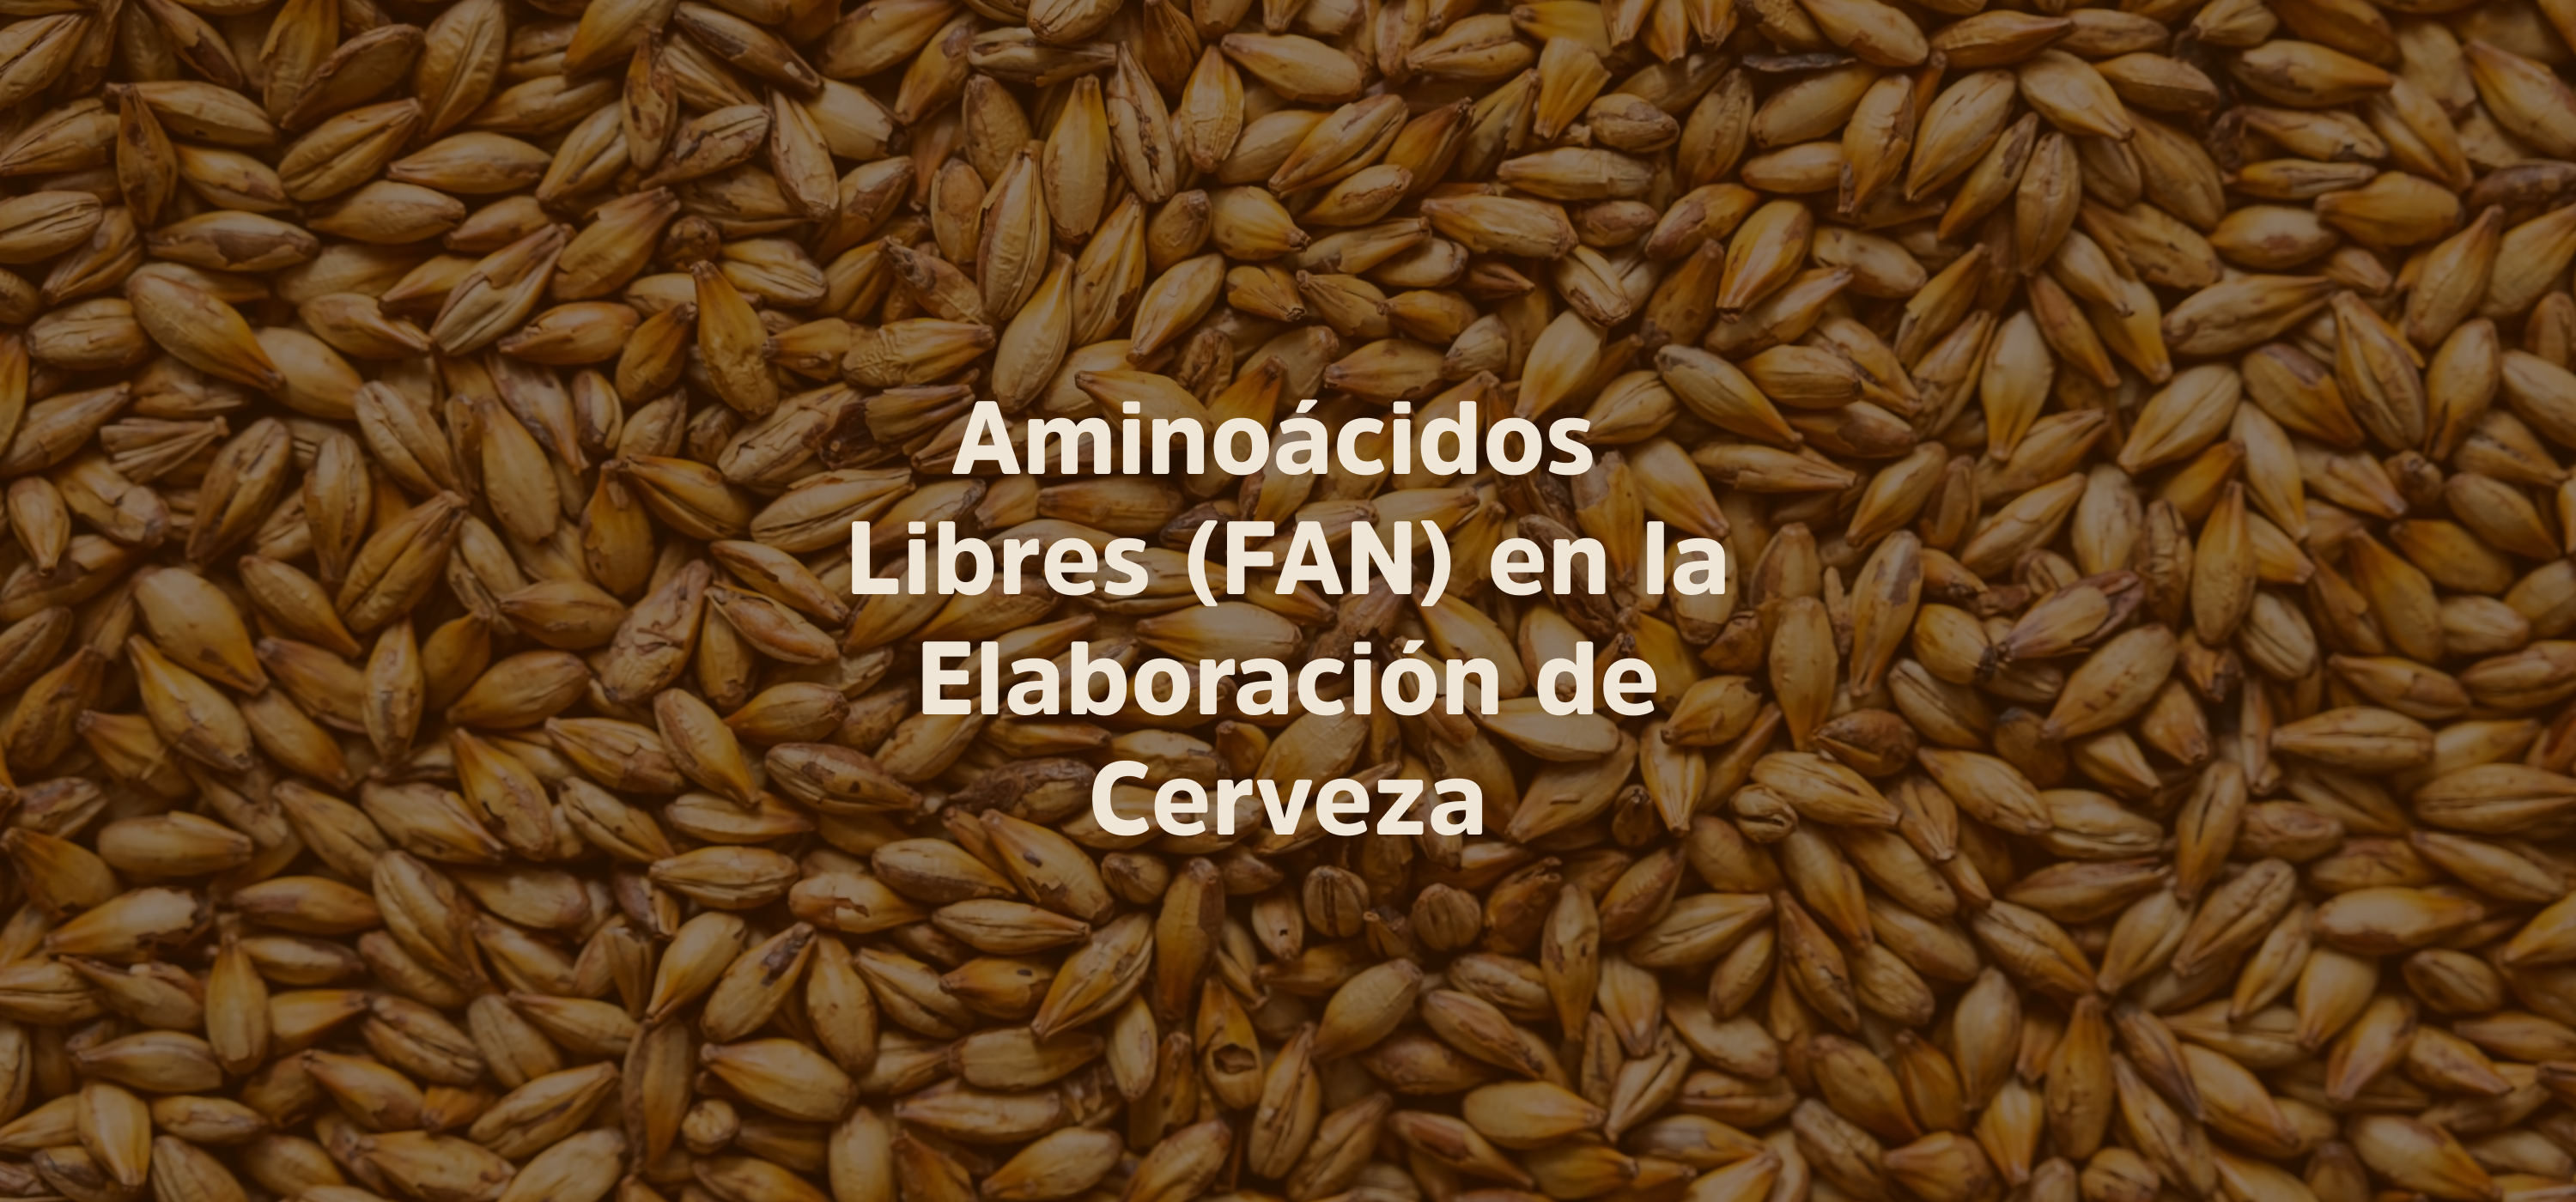  Aminoácidos Libres-FAN: ¿Qué son y por qué son importantes en la elaboración de cerveza?